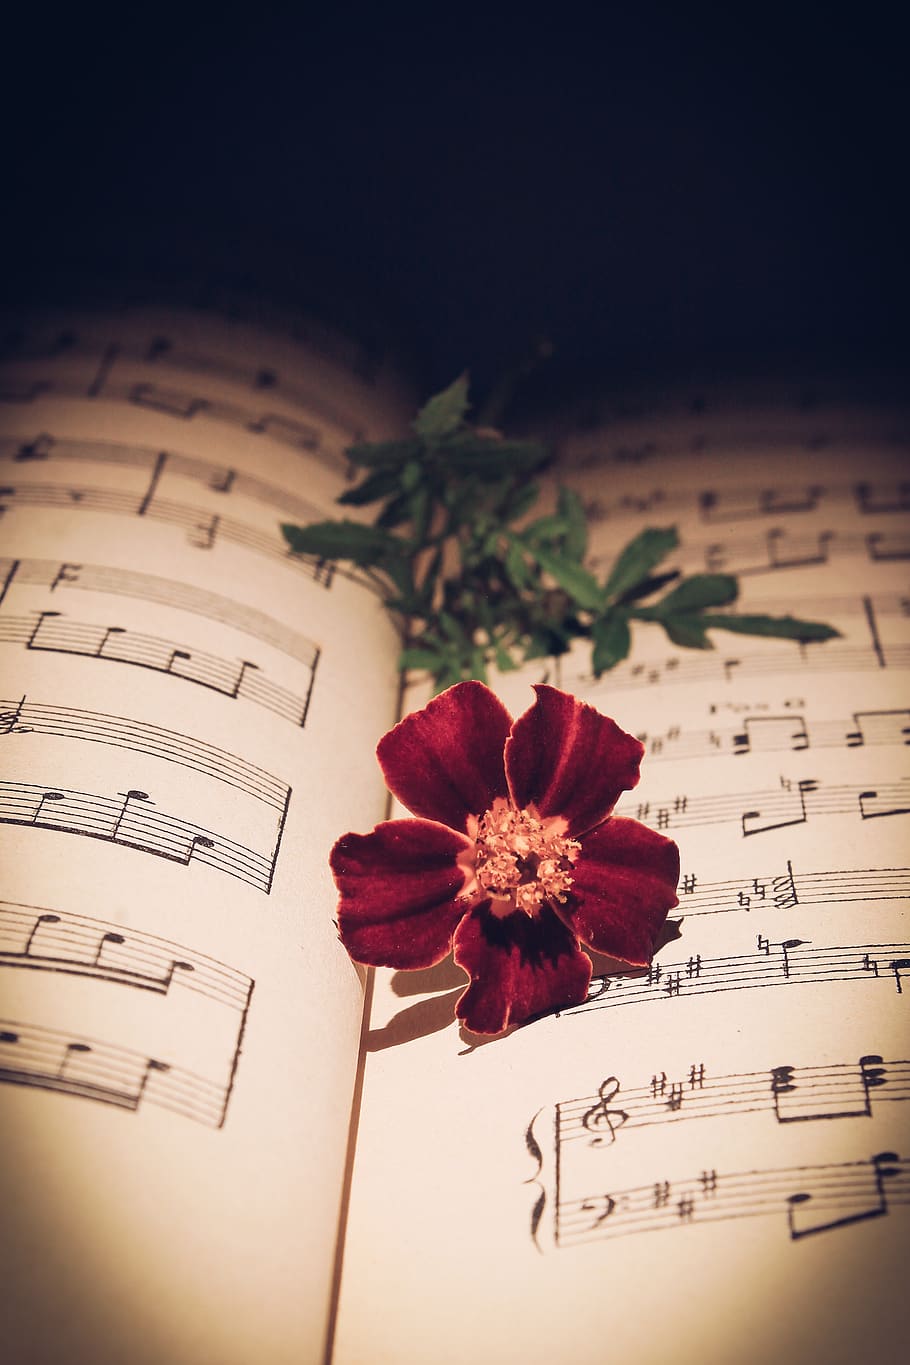 nota musical, rosa vermelha, rosa, flor vermelha, flor, romântico, vida, natureza, cravo, manuscrito